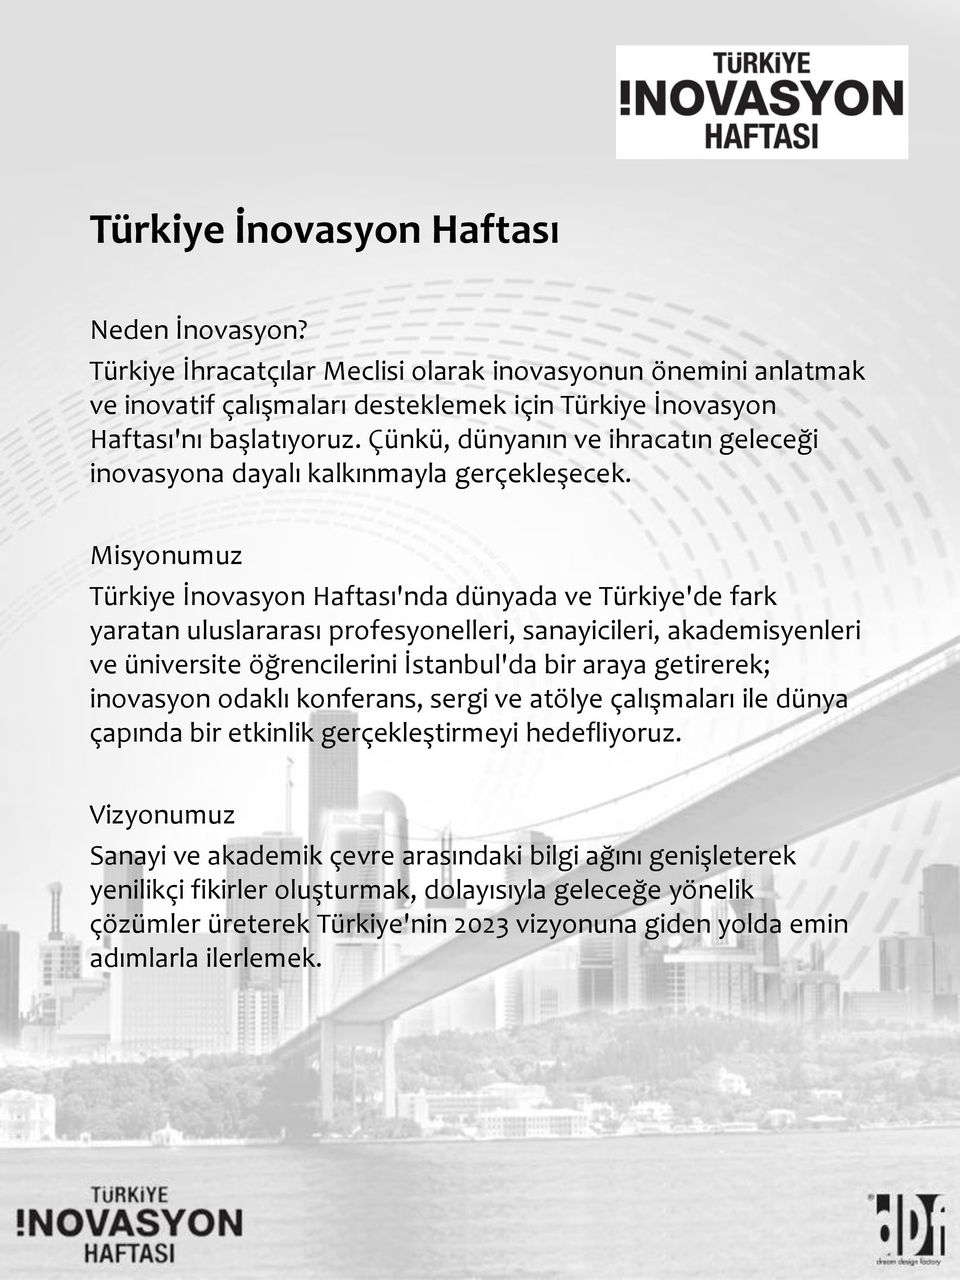 Misyonumuz Türkiye İnovasyon Haftası'nda dünyada ve Türkiye'de fark yaratan uluslararası profesyonelleri, sanayicileri, akademisyenleri ve üniversite öğrencilerini İstanbul'da bir araya getirerek;